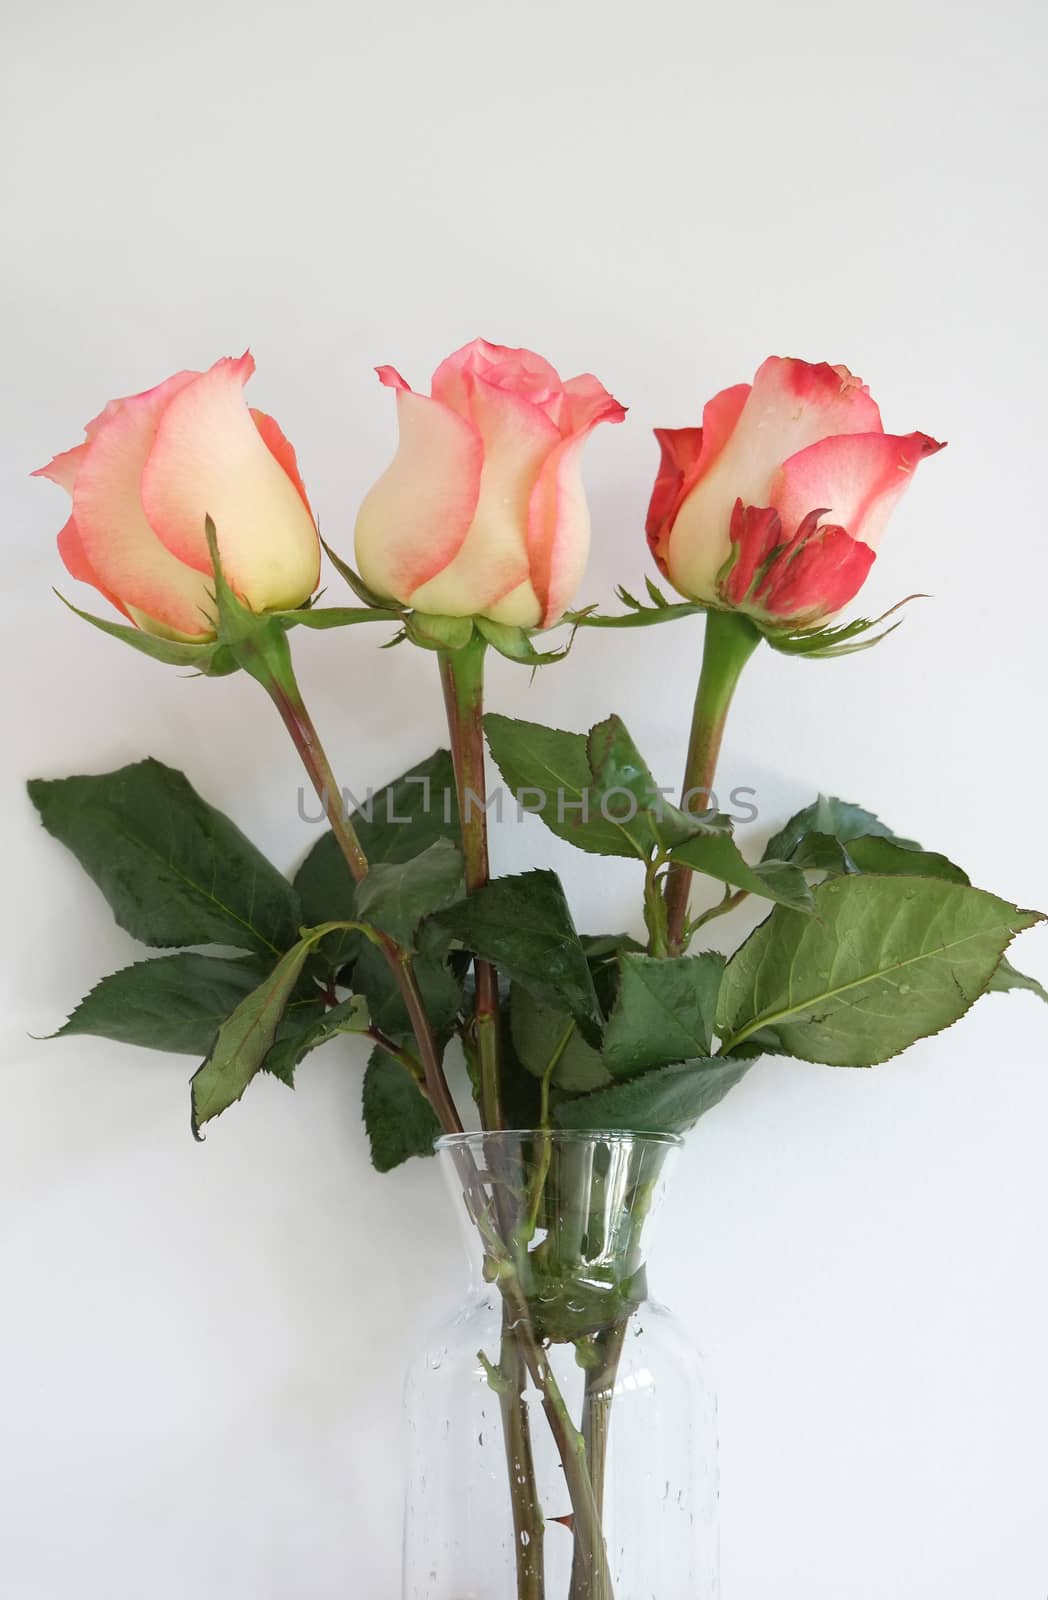 Coral long stem roses in a vase